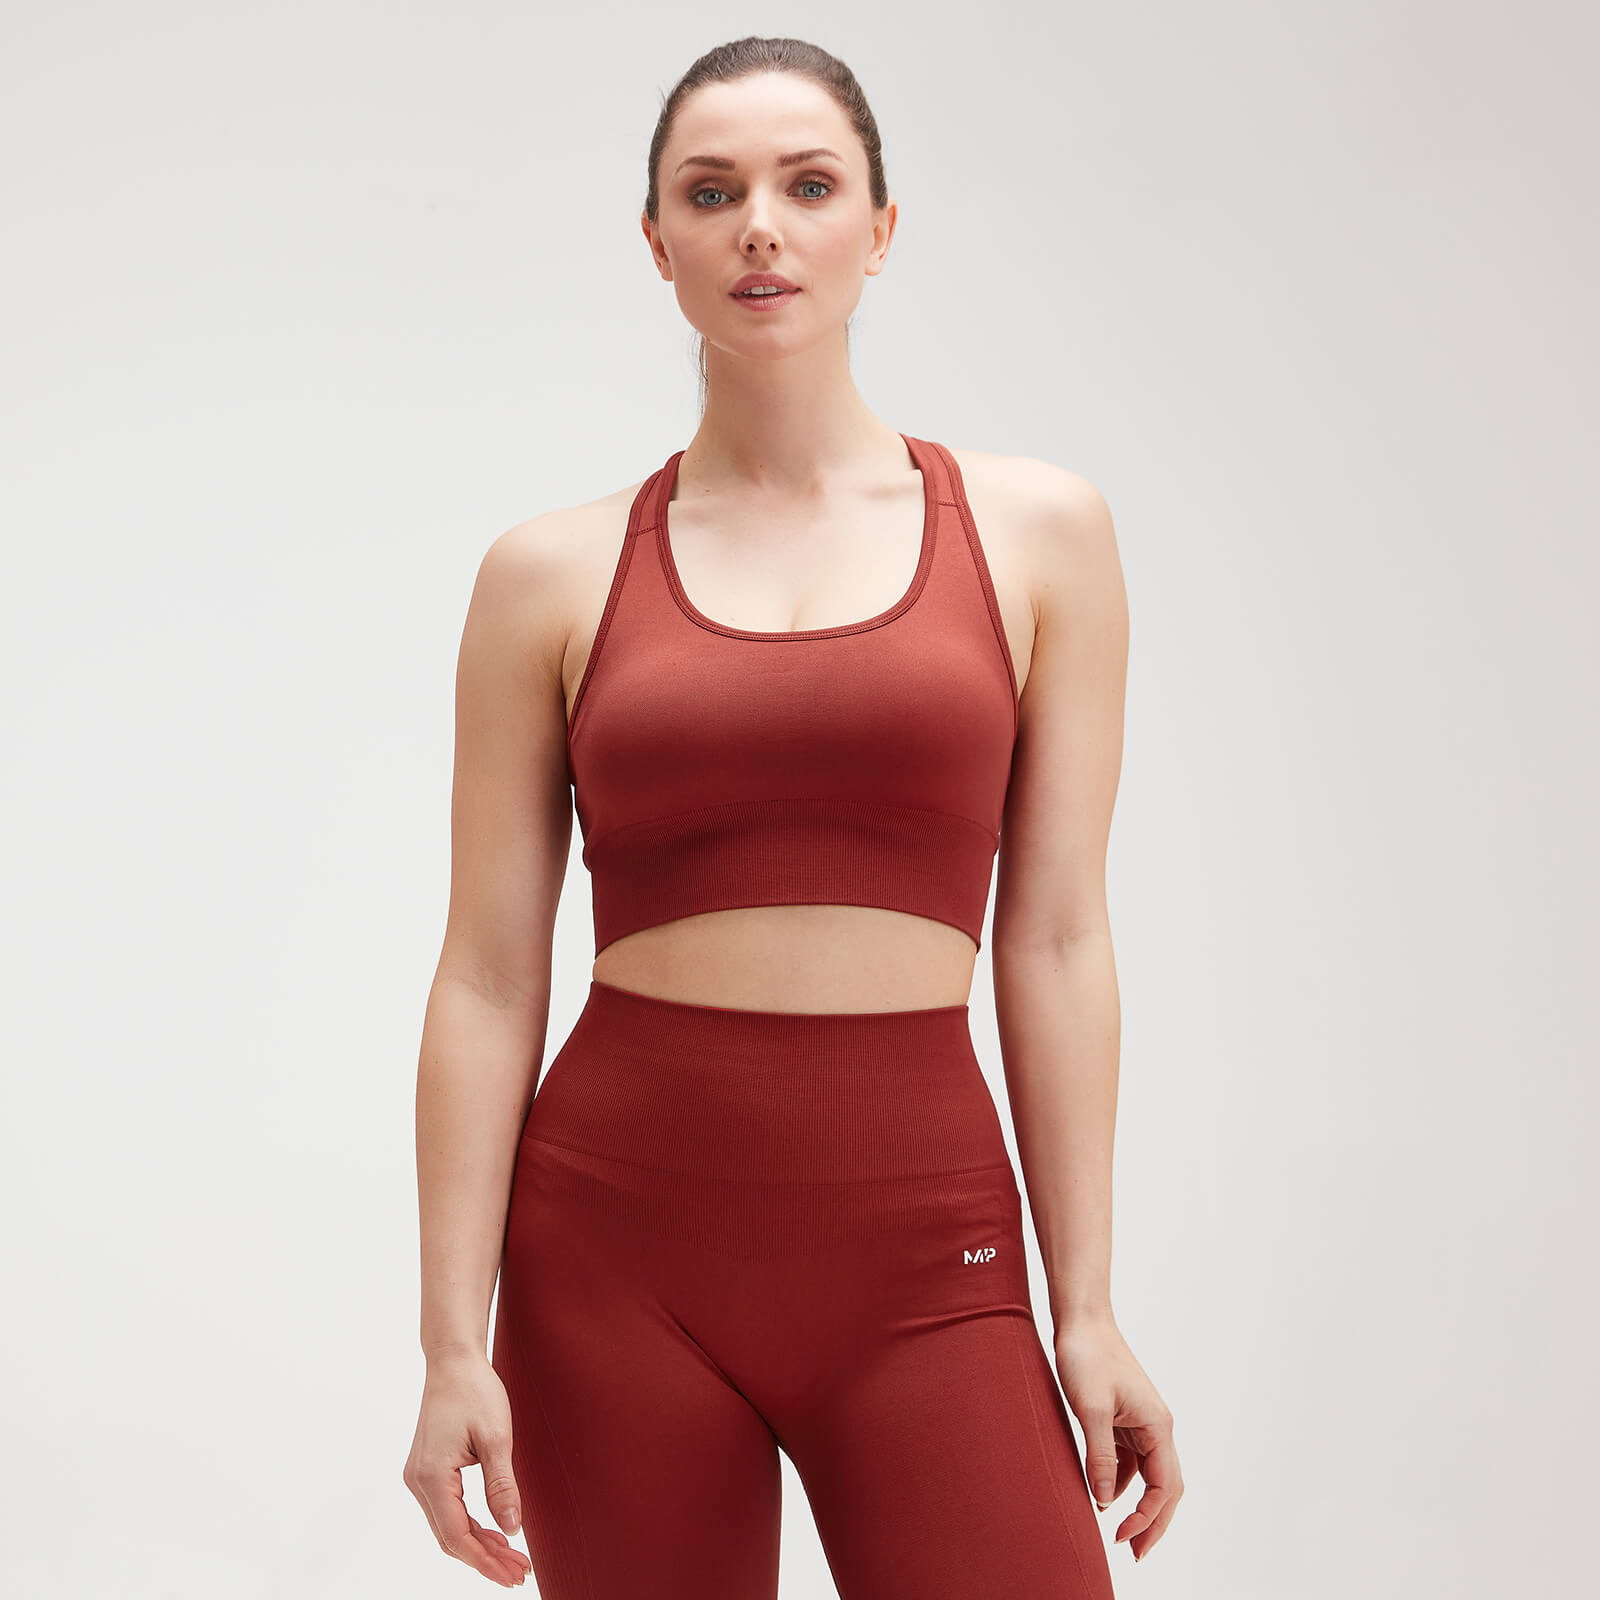 MP Shape Seamless Ultra Cross Strap Sports Bra för kvinnor – Röd - L